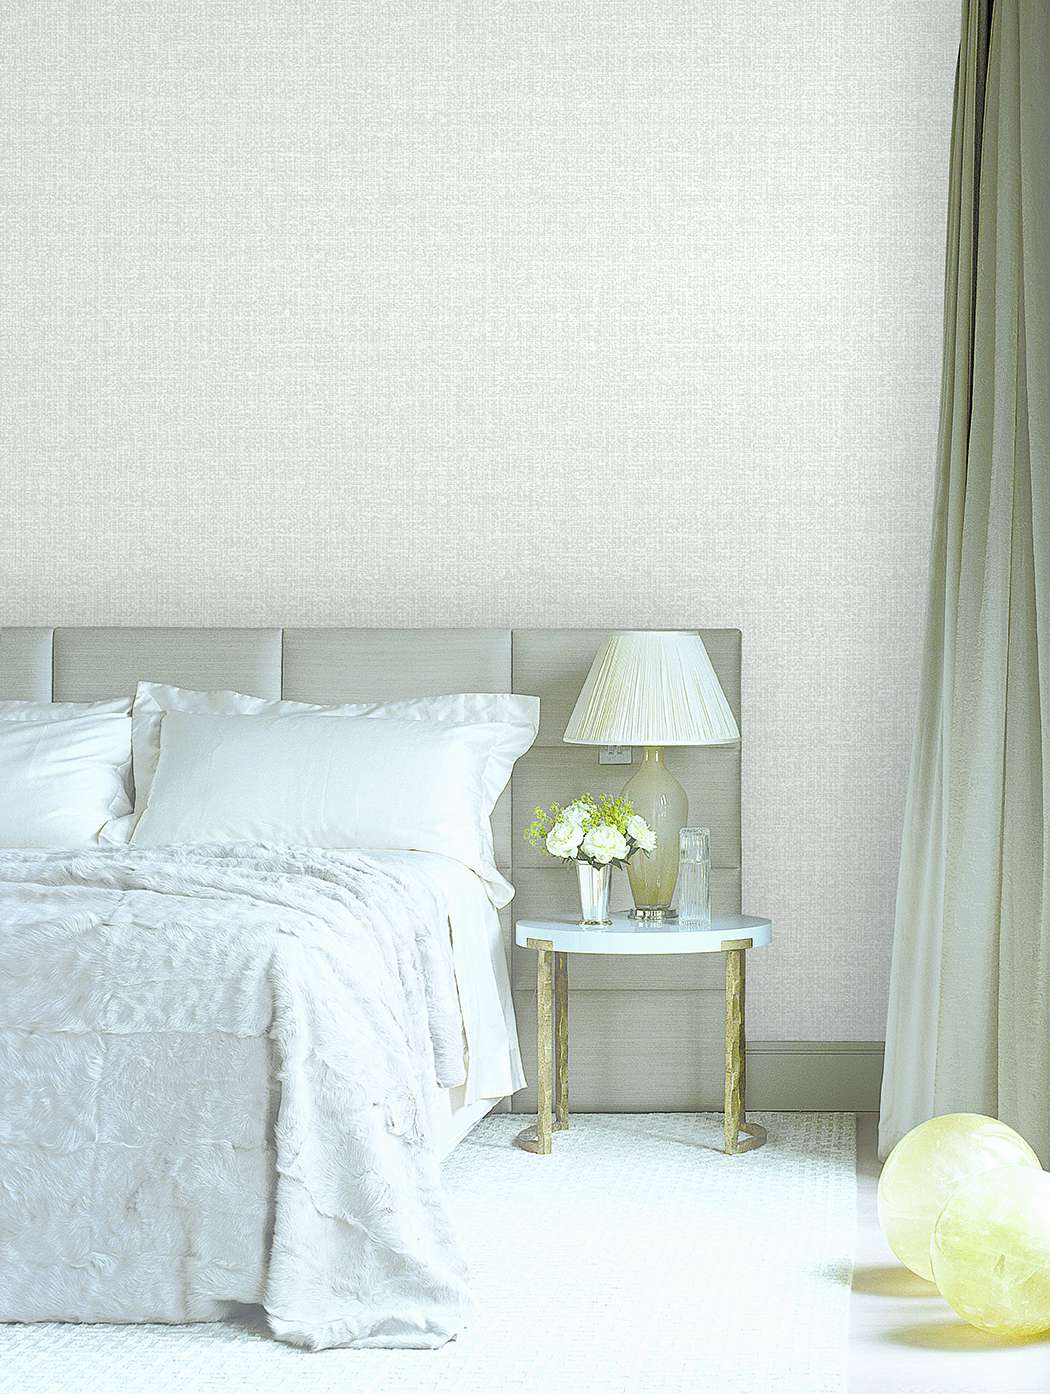 Đừng nản lòng nếu phòng ngủ của bạn là một phòng nhỏ hẹp. Những bức giấy dán tường nhỏ và tinh tế sẽ tăng thêm không gian cho phòng ngủ của bạn. Với những màu sắc phù hợp, bạn sẽ tạo nên một không gian ngủ thật thoải mái và ấm cúng.